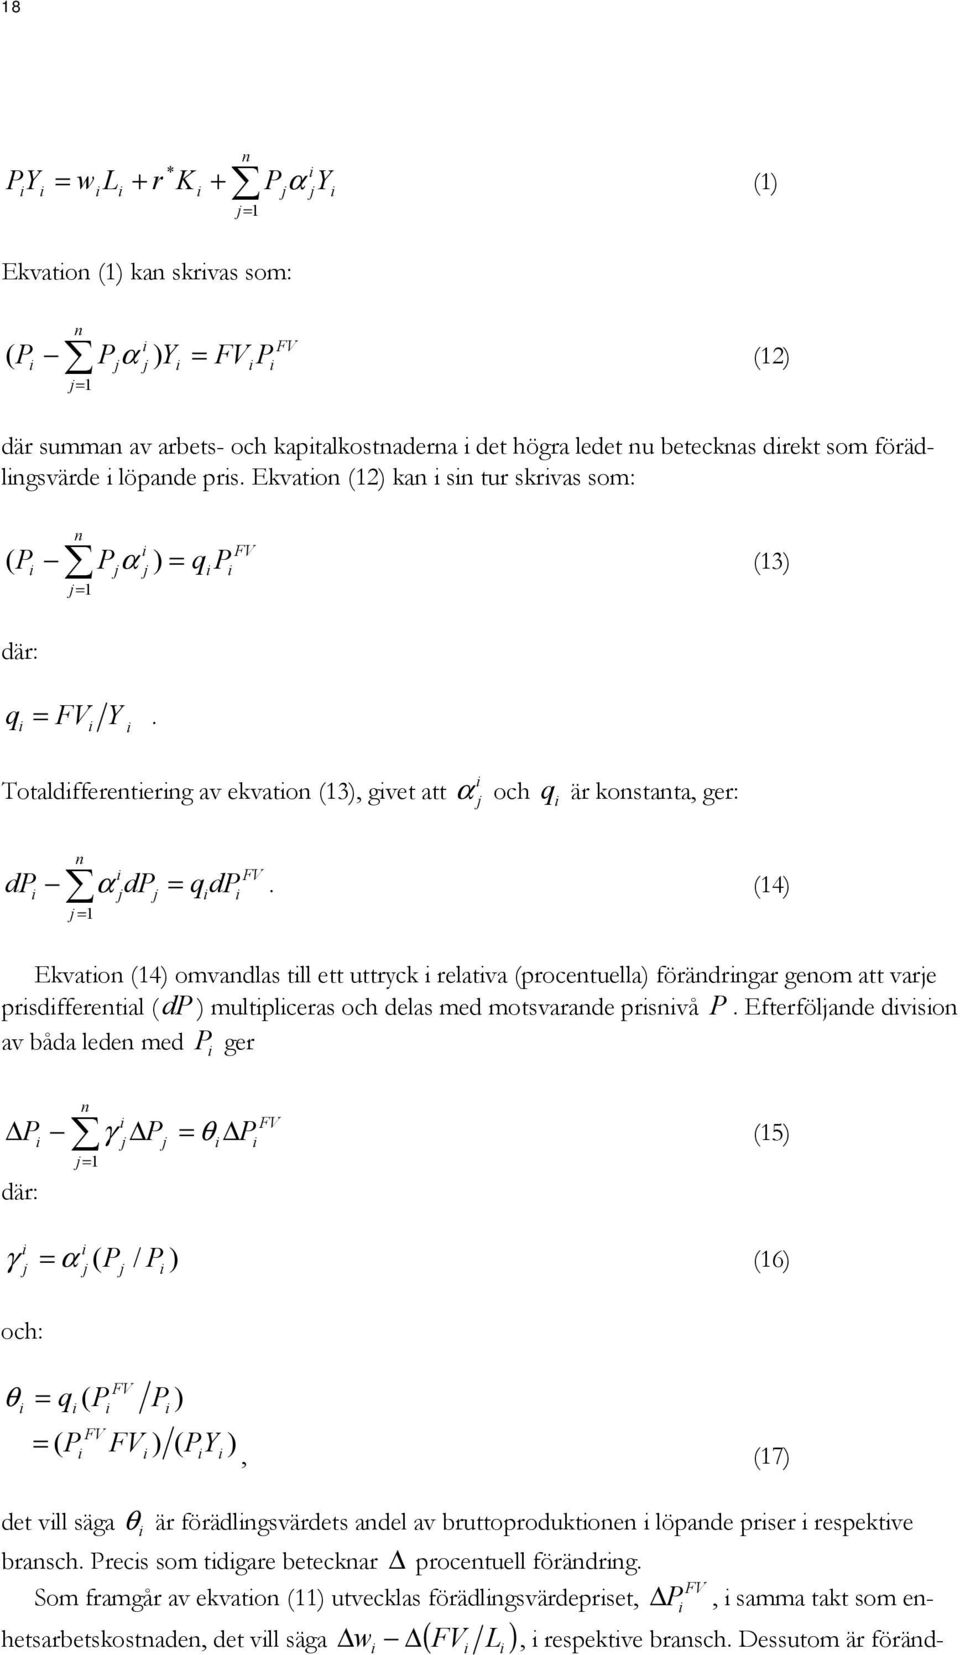 (4) j = Ekvato (4) omvadlas tll ett uttryck relatva (procetuella) förädrgar geom att varje prsdfferetal ( dp ) multplceras och delas med motsvarade prsvå P.